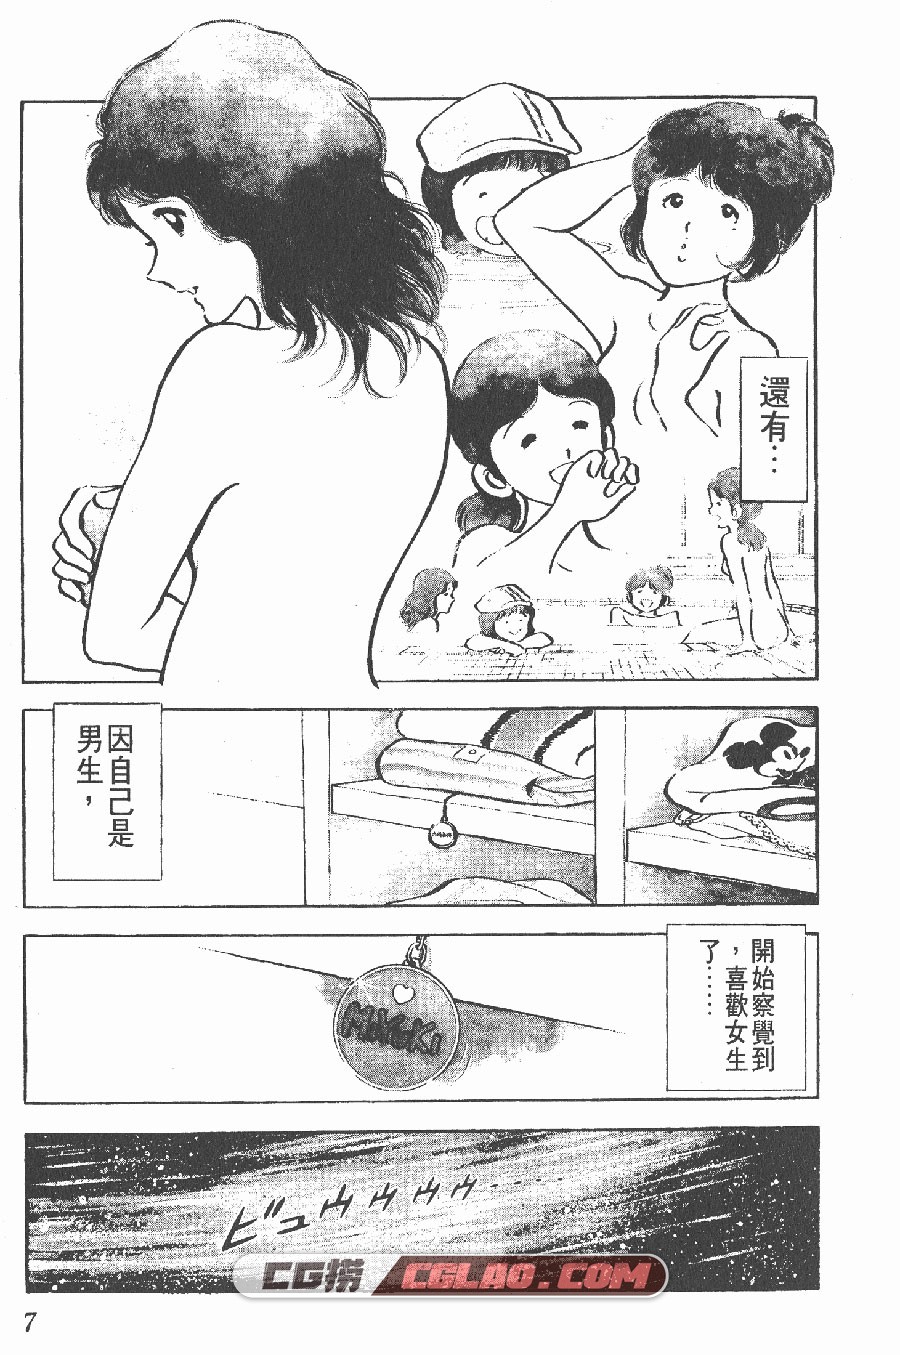 美雪·美雪 安达充 12卷 漫画完结全集下载 百度网盘,_MM01-_0003.jpg